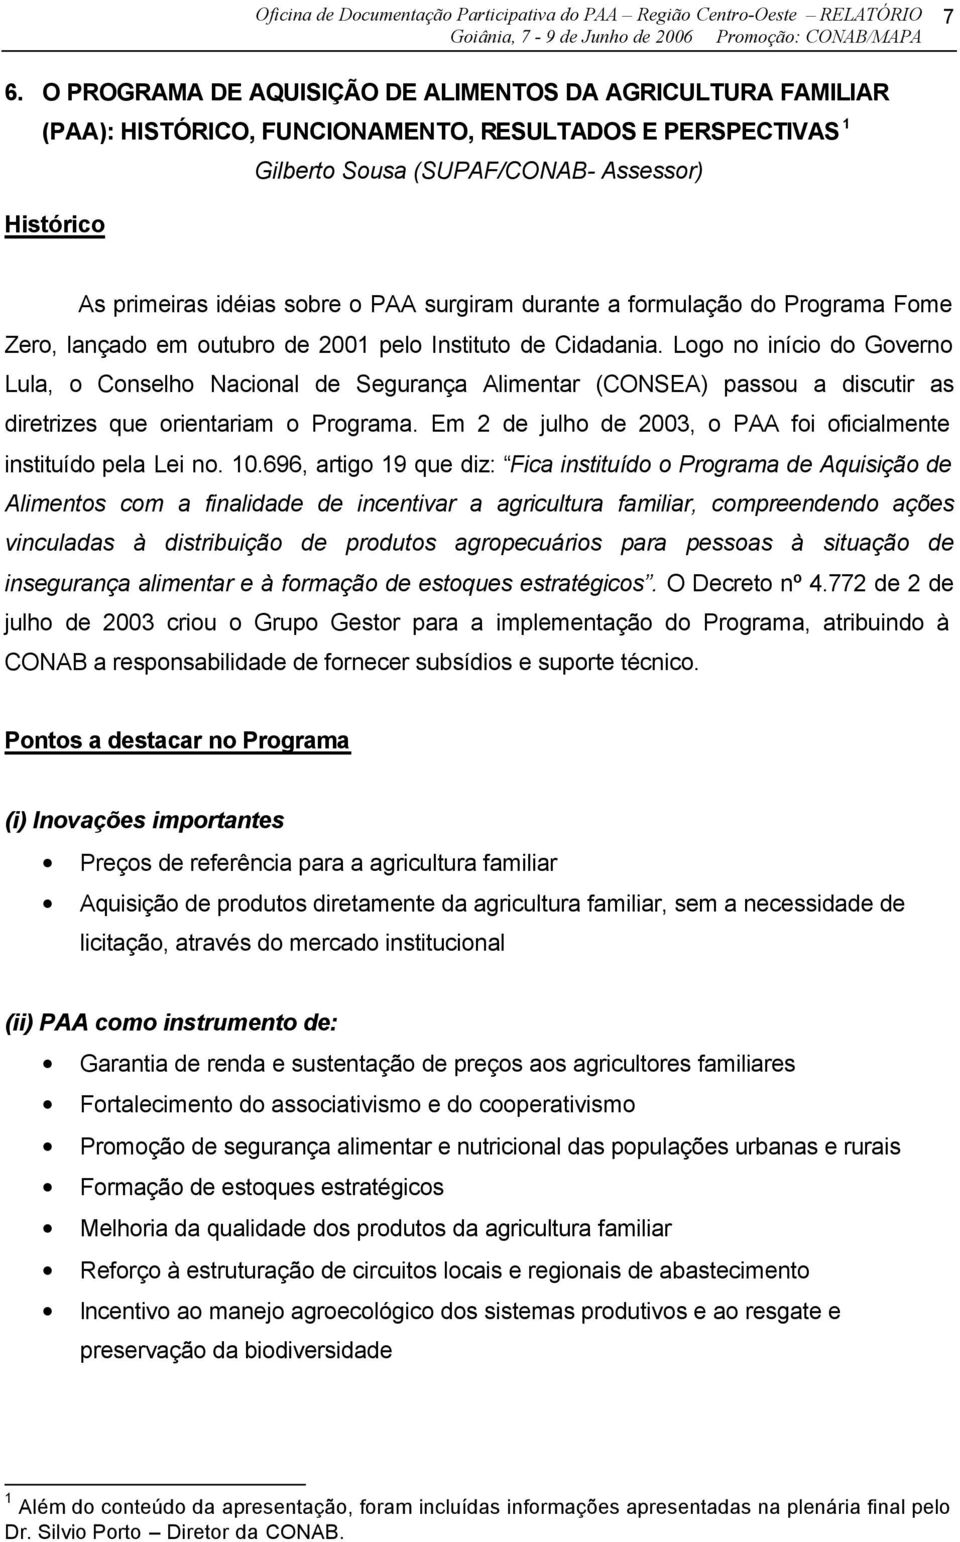 PAA surgiram durante a formulação do Programa Fome Zero, lançado em outubro de 2001 pelo Instituto de Cidadania.